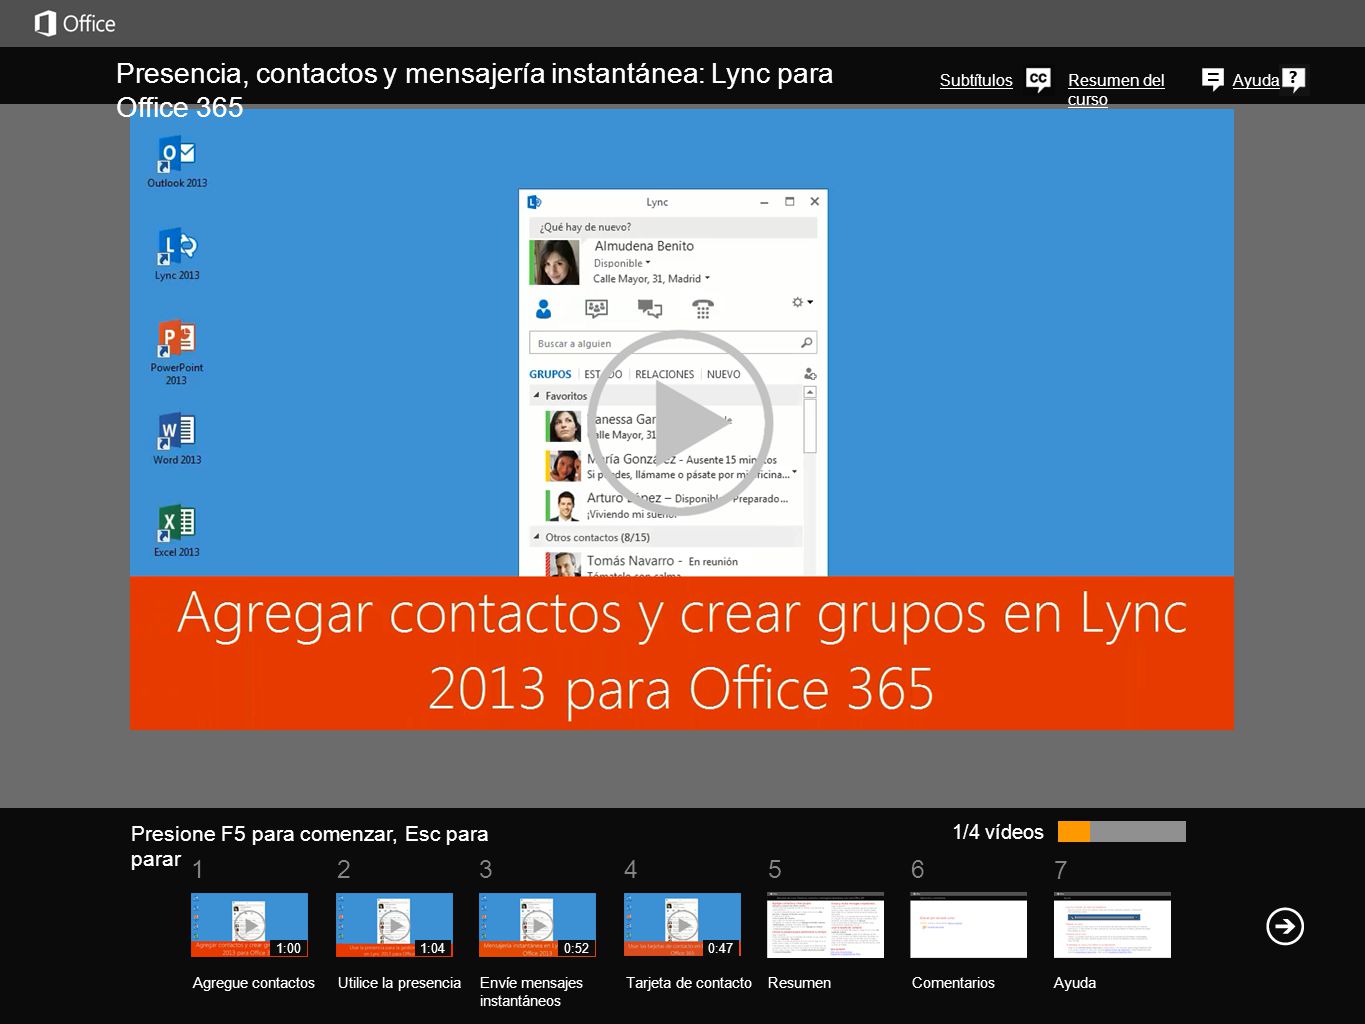 Presencia, contactos y mensajería instantánea: Lync para Office 365